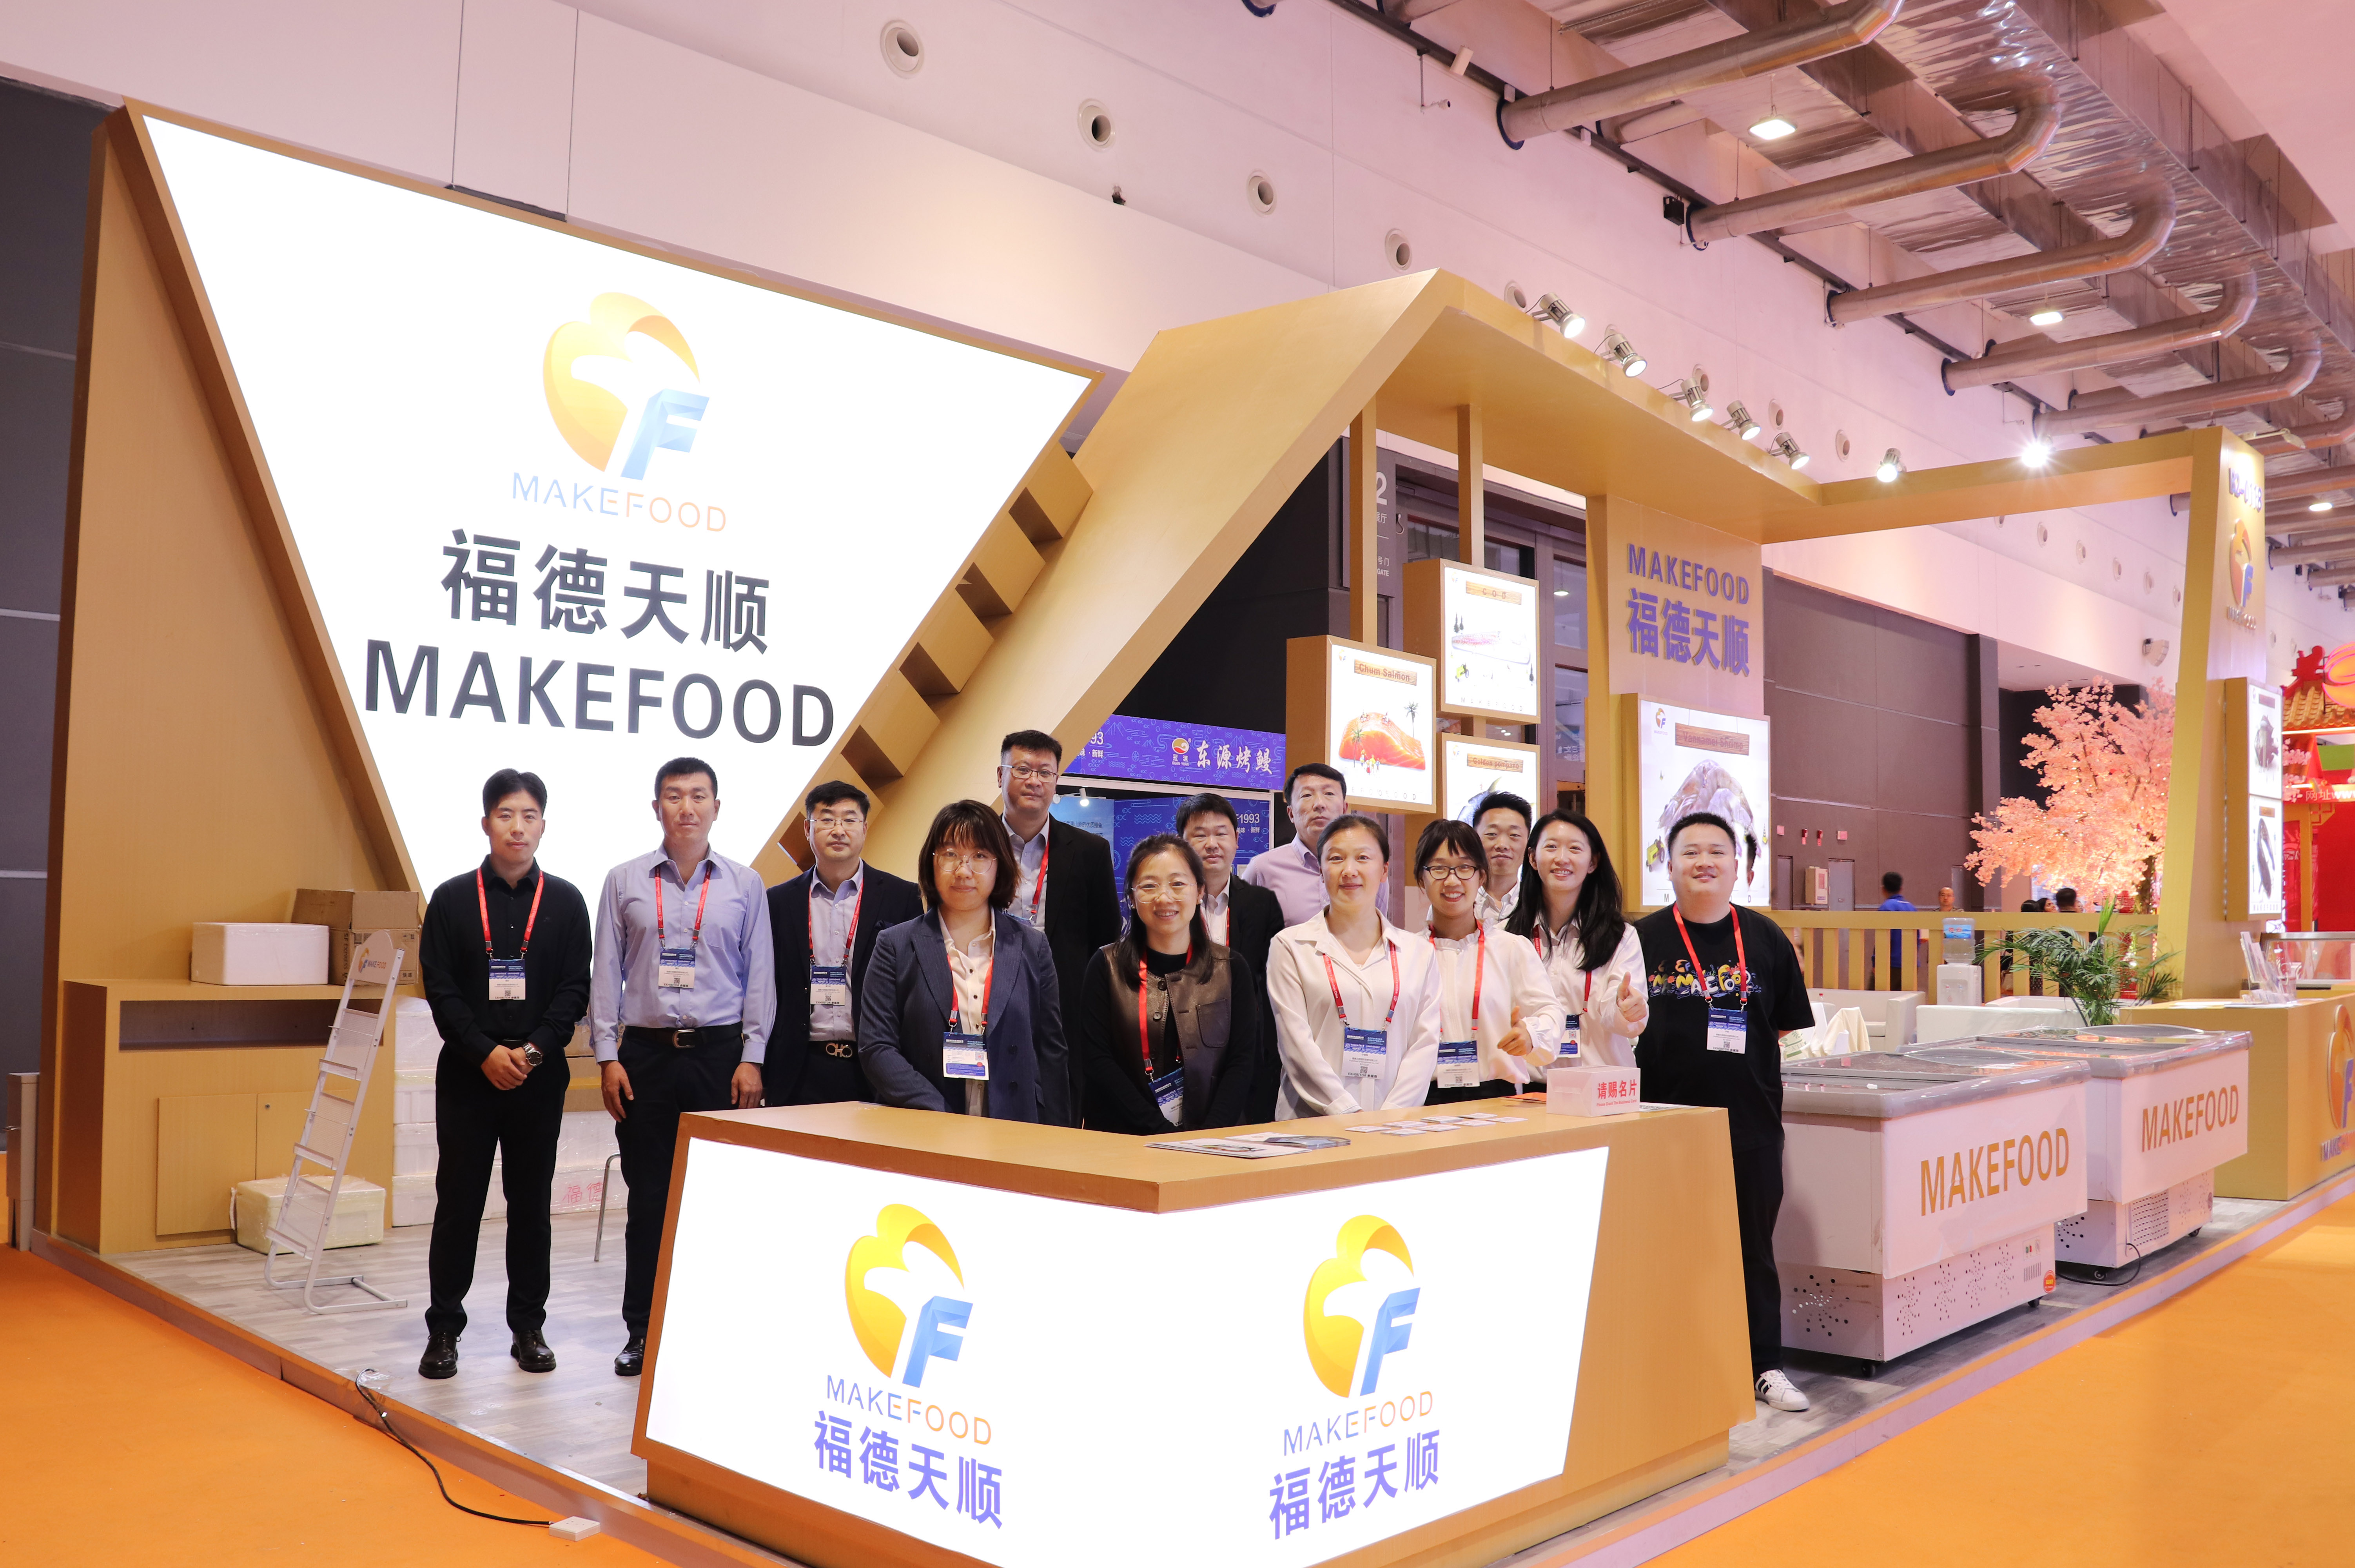 MAKEFOOD bëri një paraqitje të mrekullueshme në Ekspozitën Detare Qingdao për të diskutuar inovacionin e industrisë dhe zhvillimin e qëndrueshëm